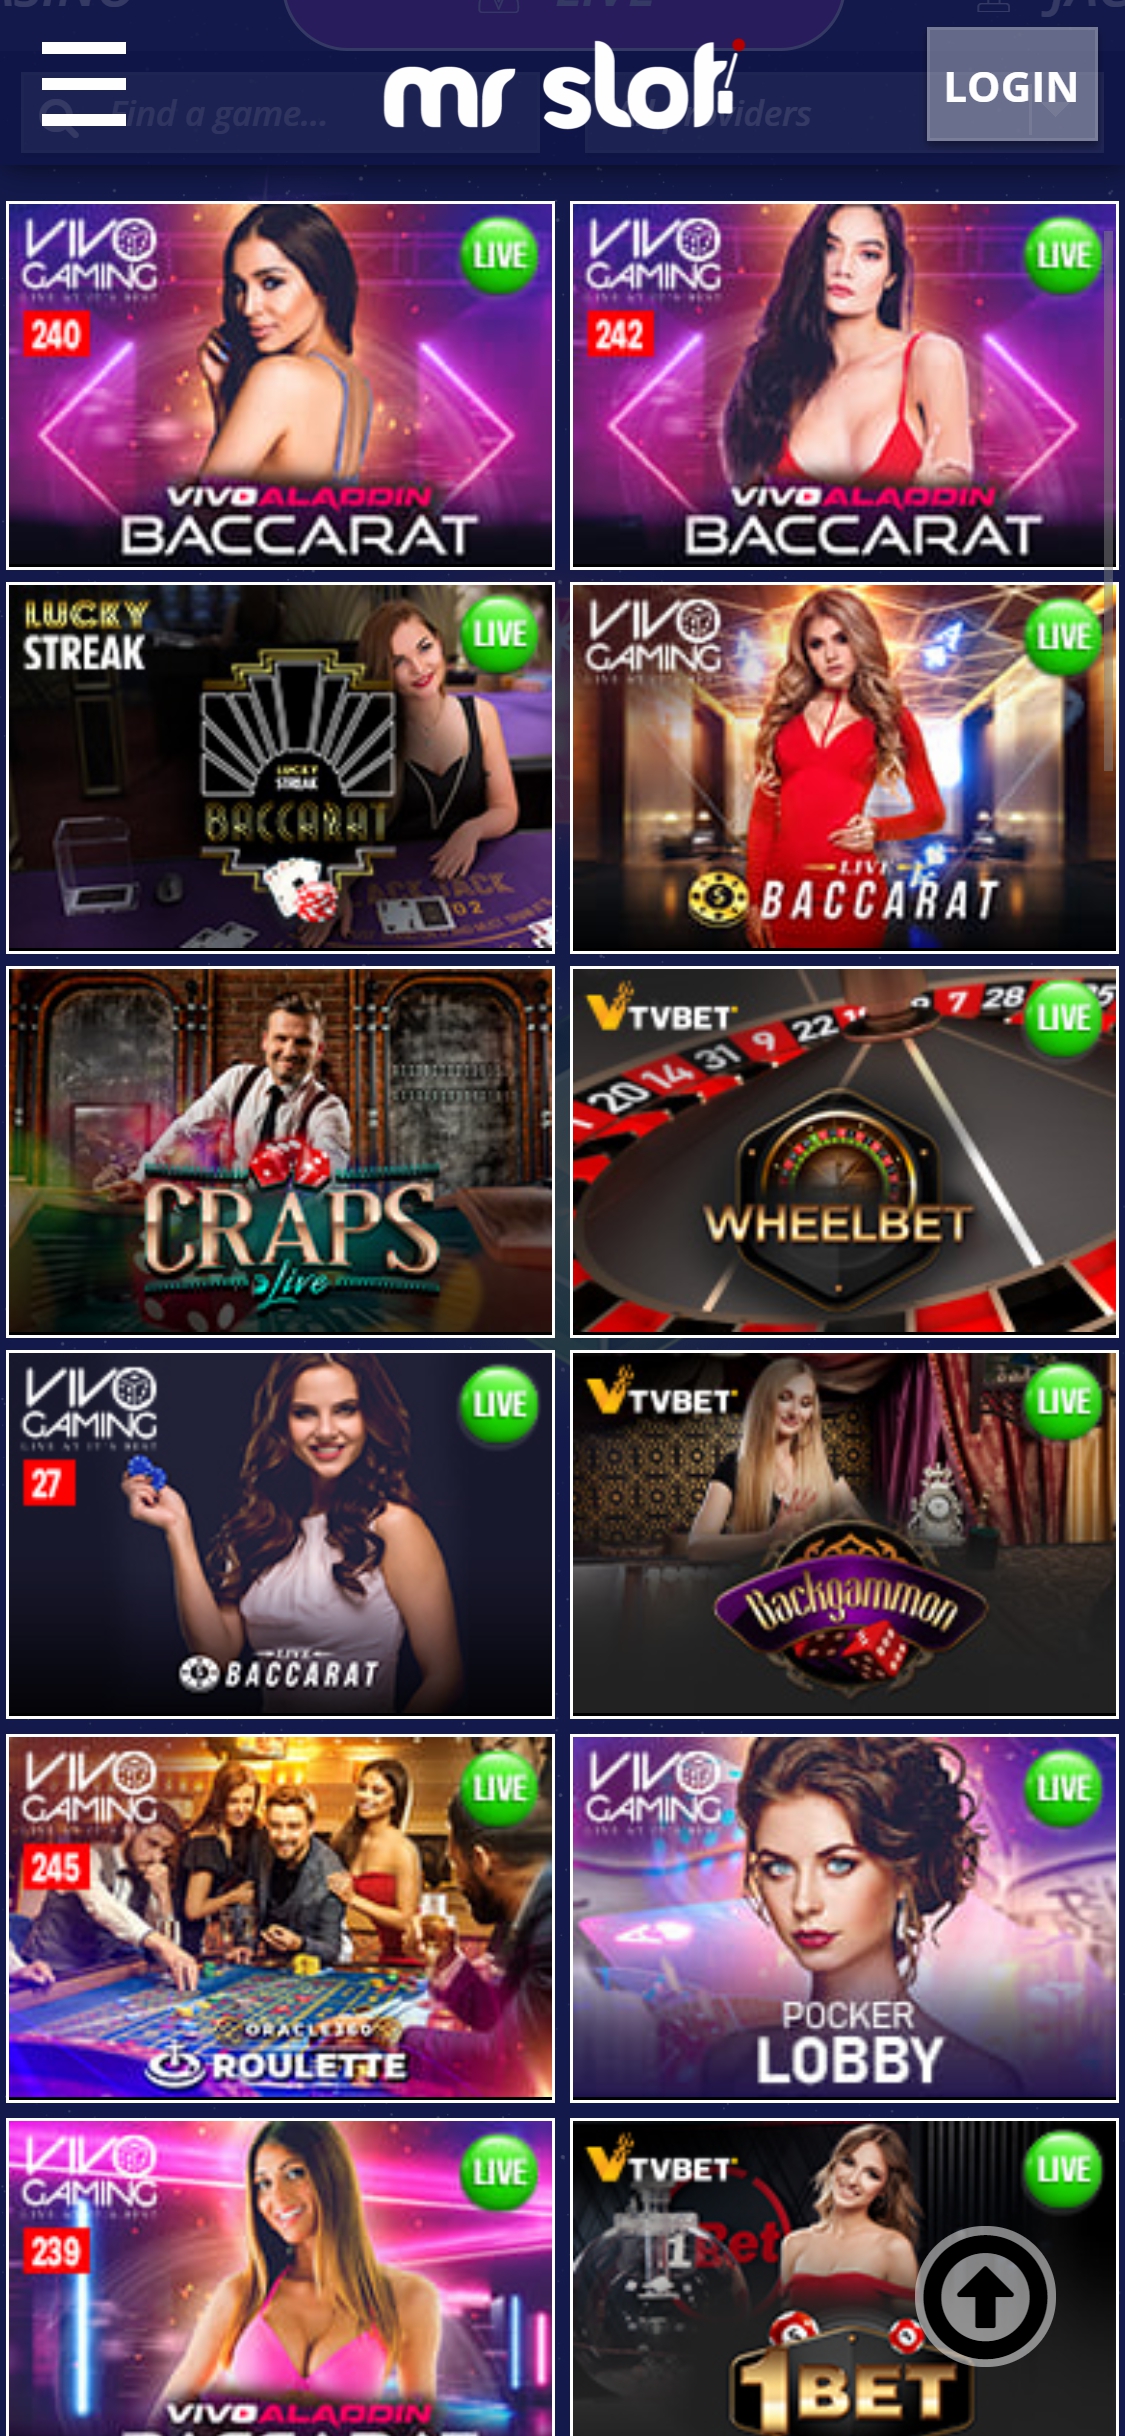 MrSlot Casino Mobile Live Dealer Games Review